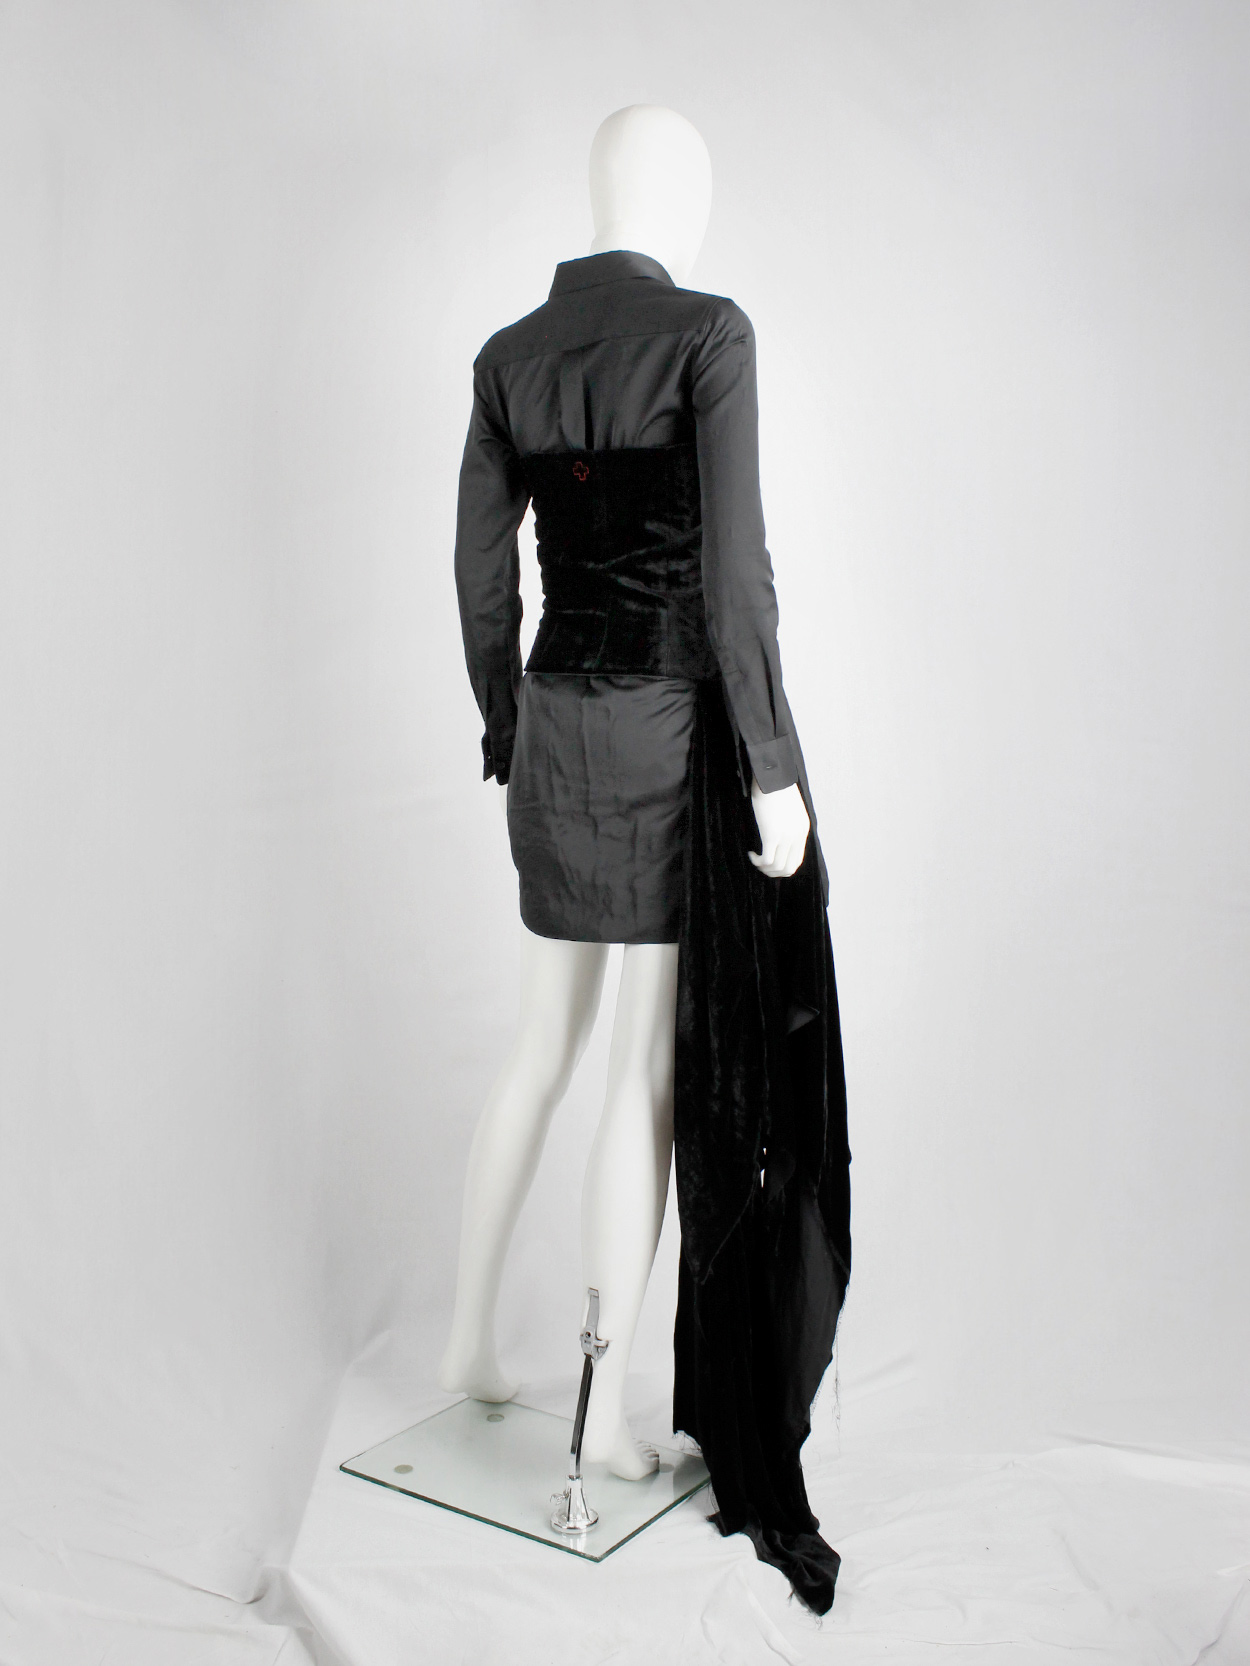 af Vandevorst black velvet bustier with sash and floor-length side drape fall 2016 (13)